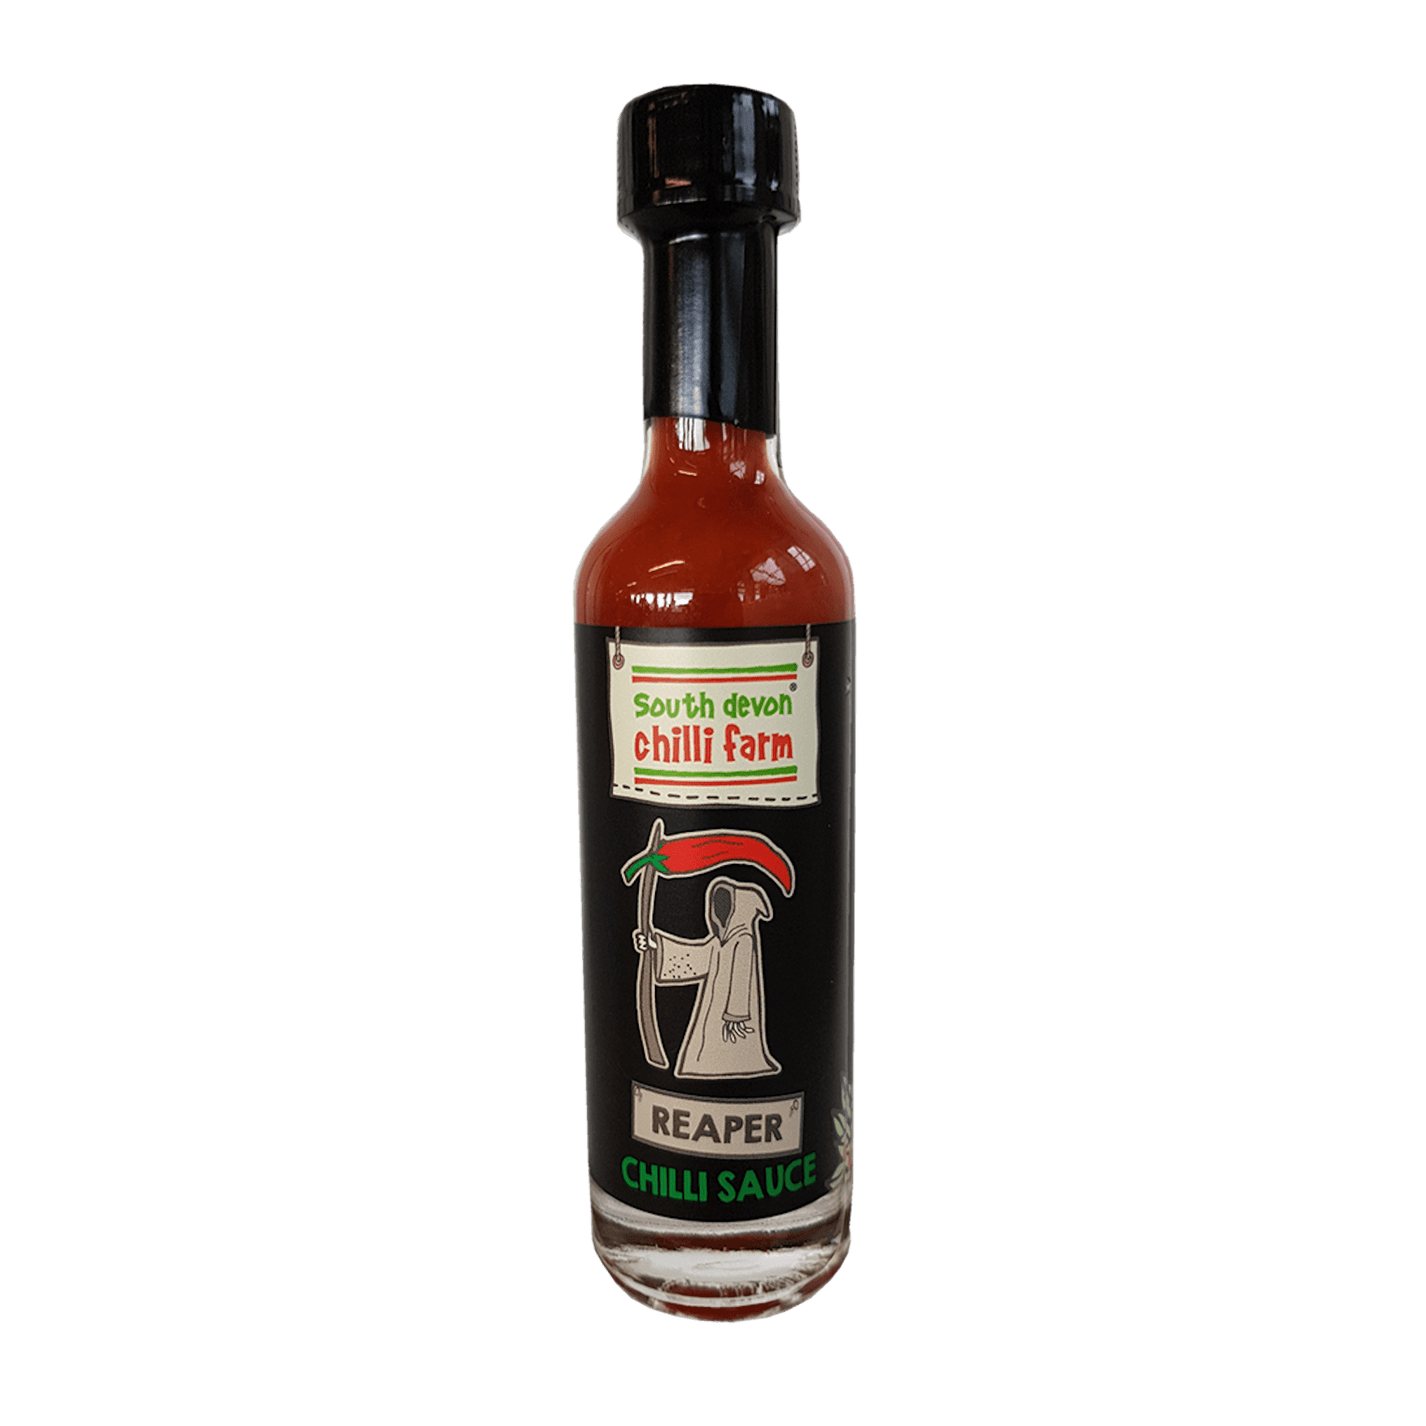 Reaper Chilli Sauce 50ml South Devon Chilli Farm